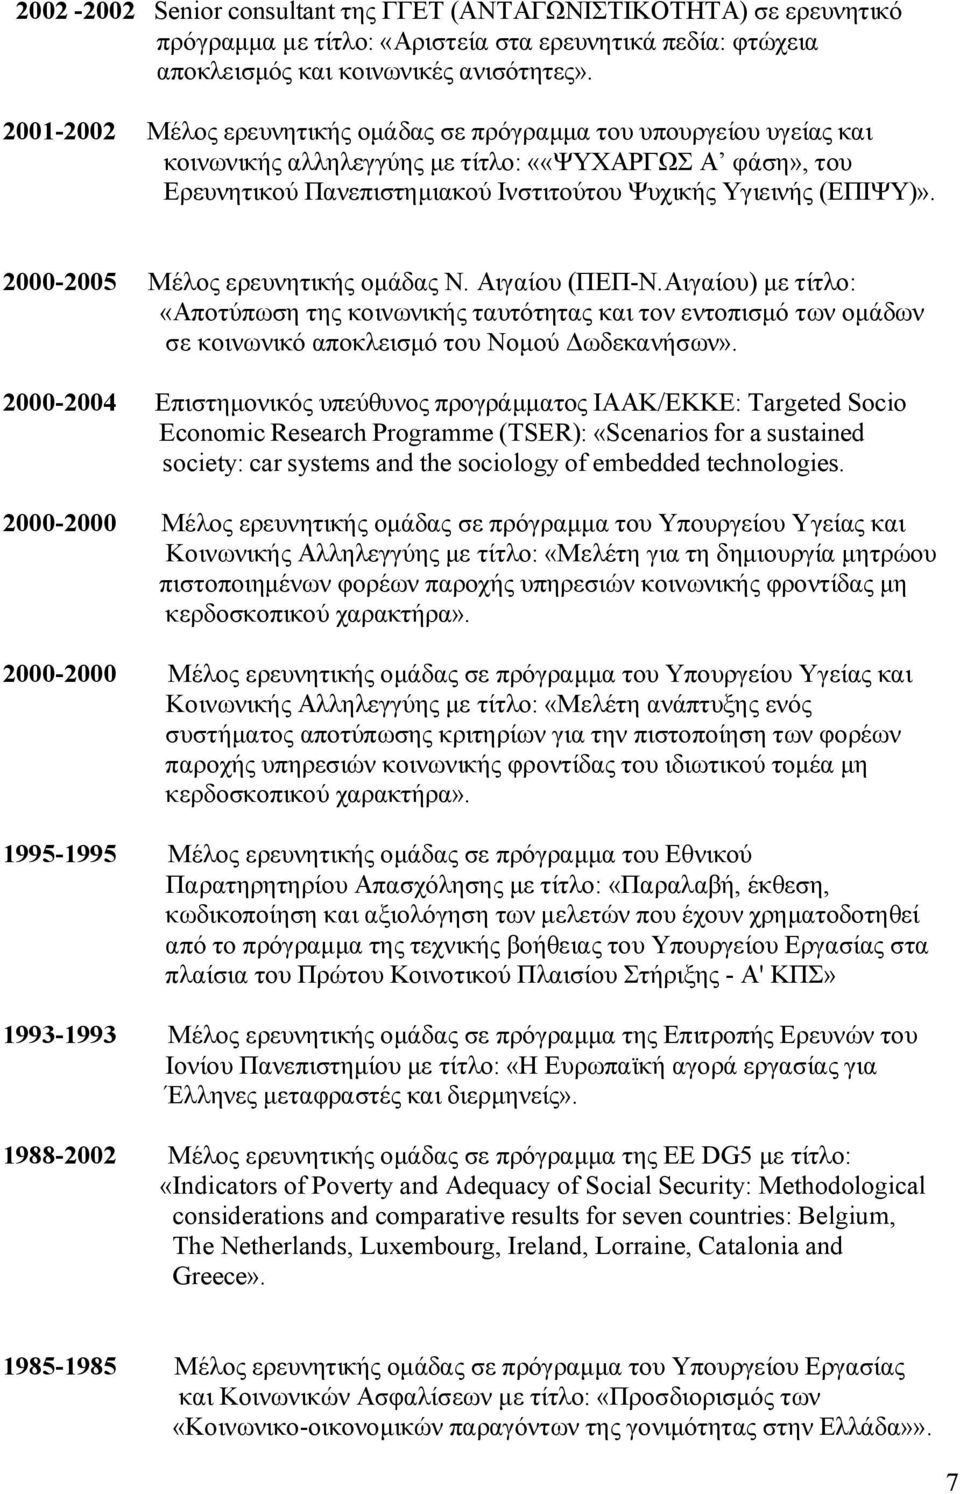 2000-2005 Μέλος ερευνητικής ομάδας Ν. Αιγαίου (ΠΕΠ-Ν.Αιγαίου) με τίτλο: «Αποτύπωση της κοινωνικής ταυτότητας και τον εντοπισμό των ομάδων σε κοινωνικό αποκλεισμό του Νομού Δωδεκανήσων».